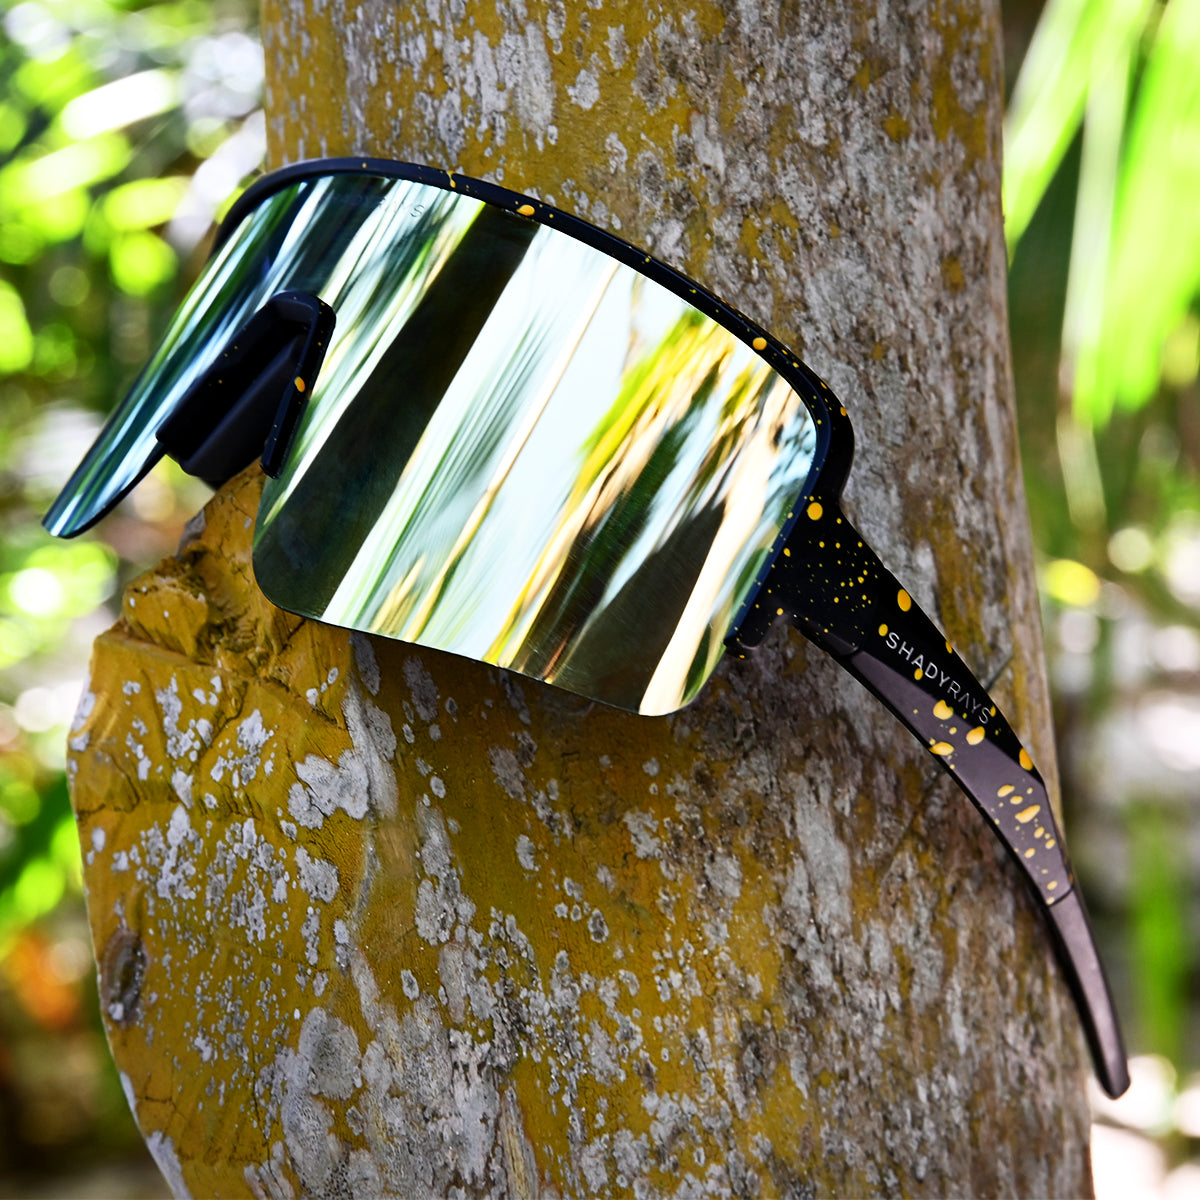 Shop Gafas de sol de tiro con arco at Sunwise®